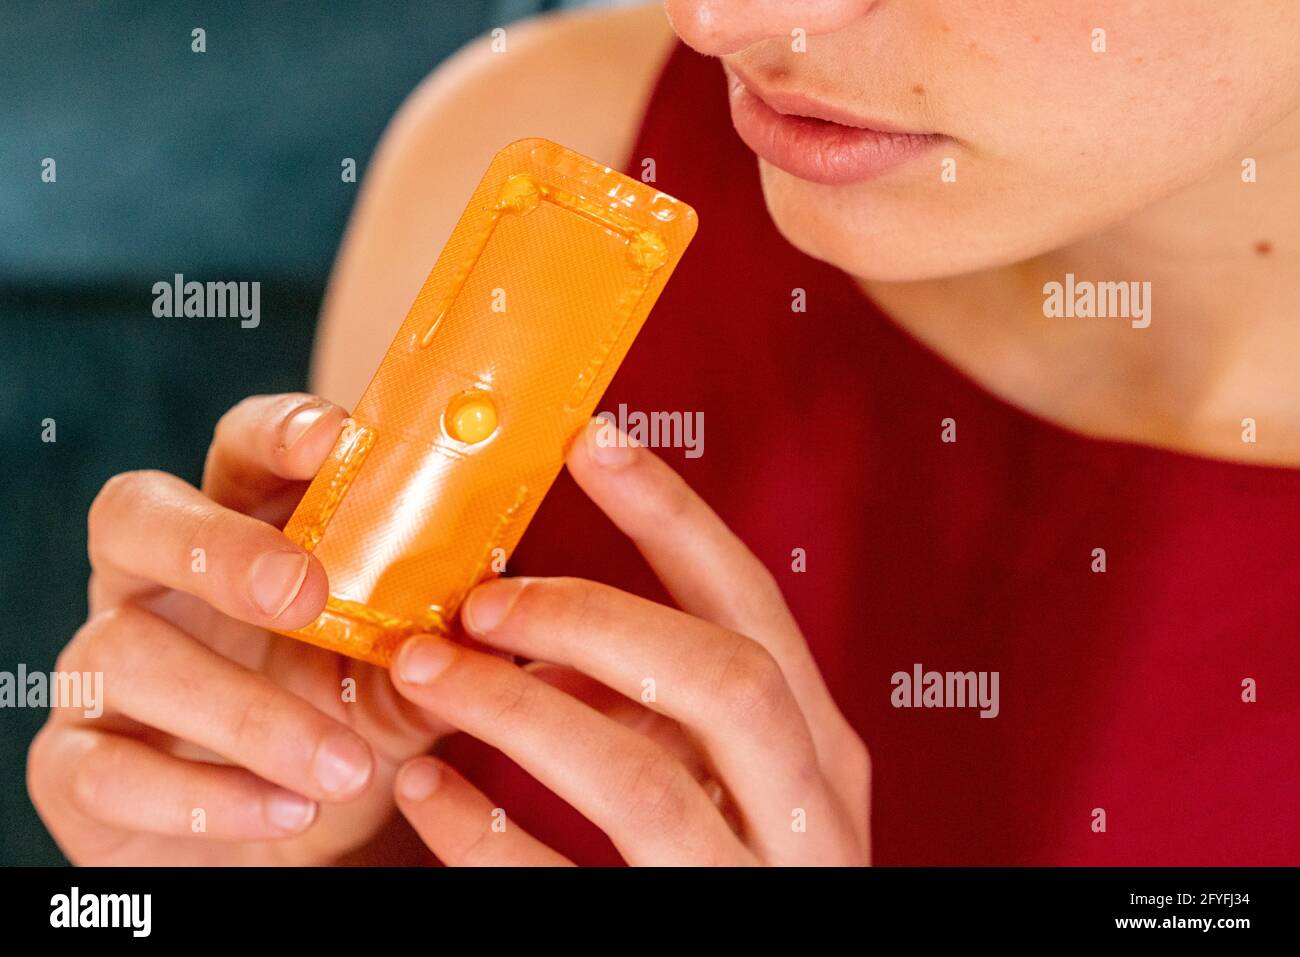 Norlevo ® "pillola del giorno dopo" (emergenza pillola contraccettiva) Foto Stock